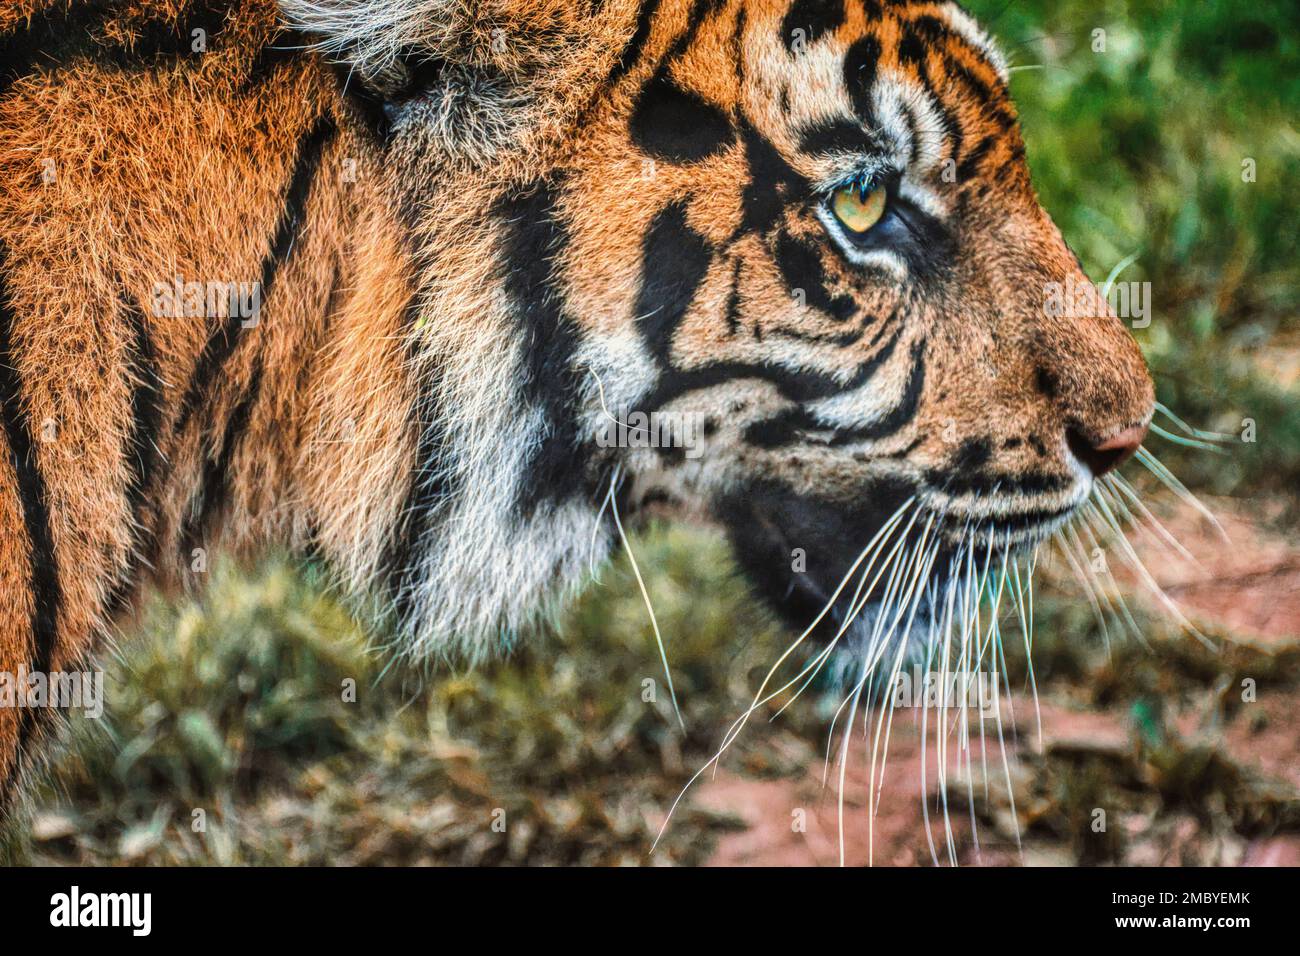 Nahaufnahme der rechten Seite des Gesichts eines bengalischen Tigers Stockfoto